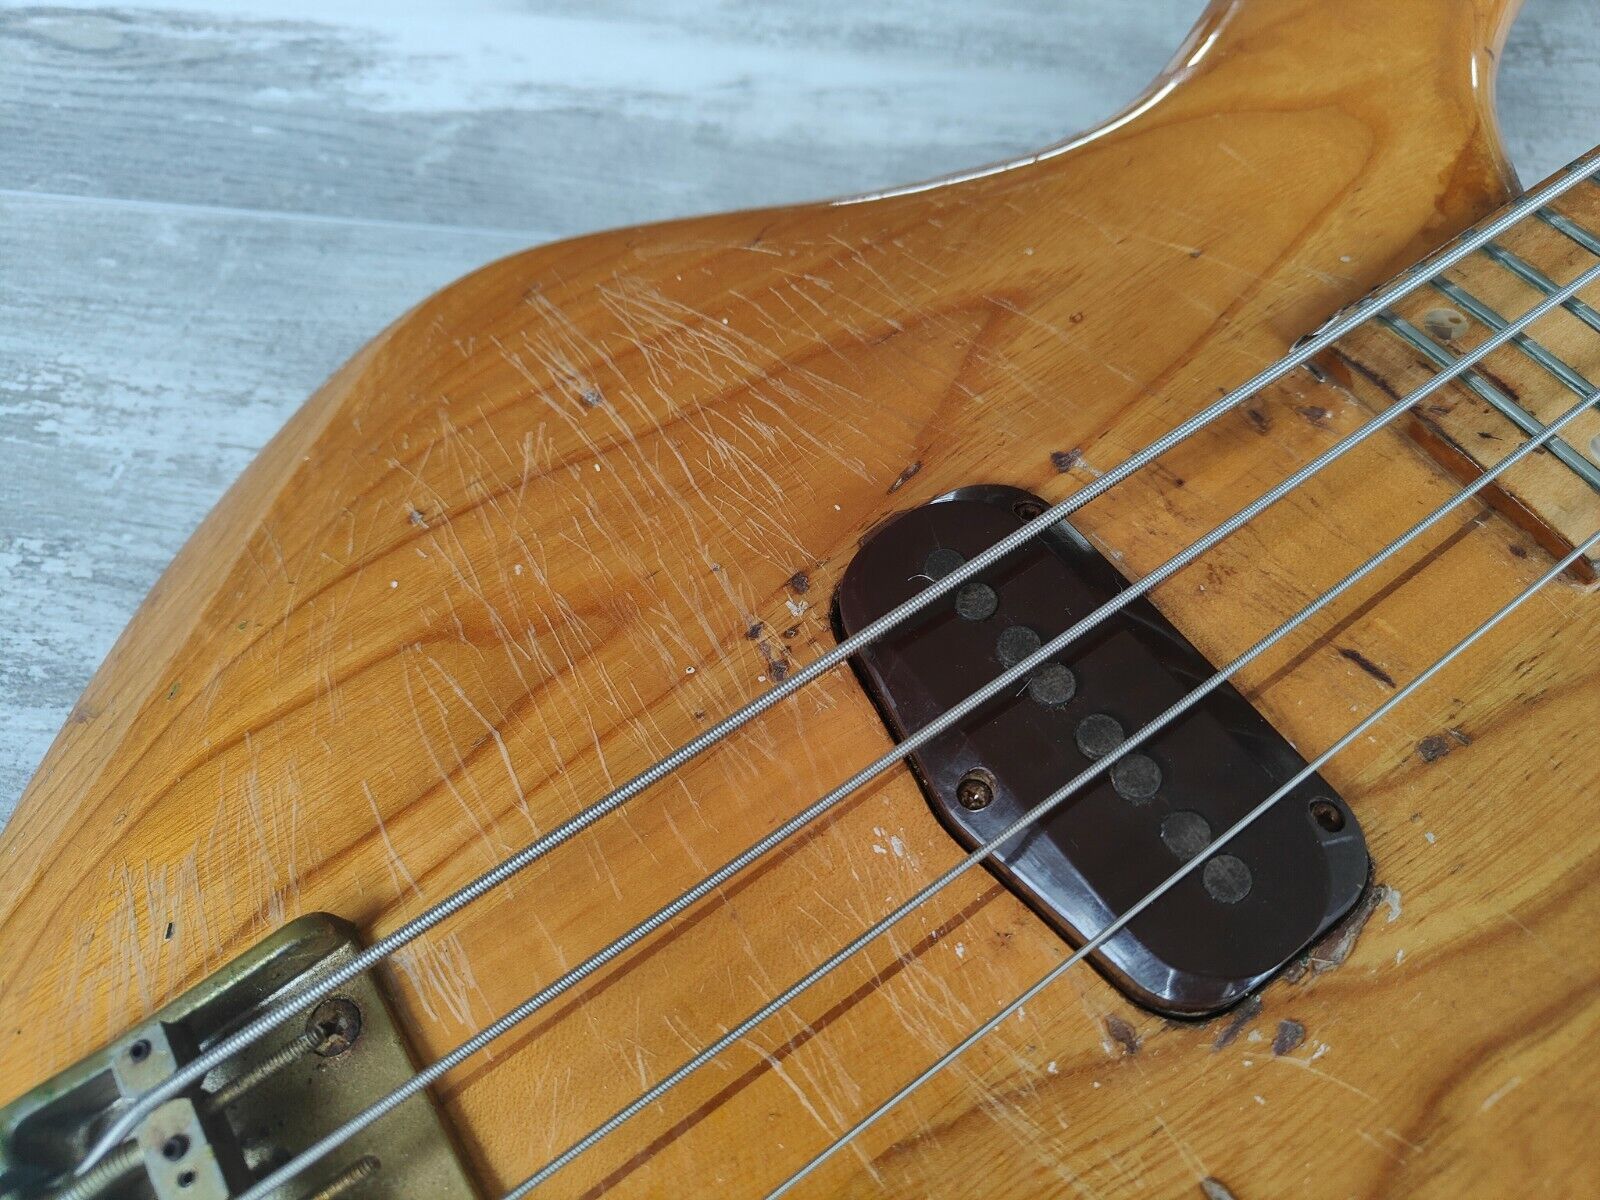 1979 Greco Original GOBII750 Double Cutaway Neckthrough Bass (Natural)